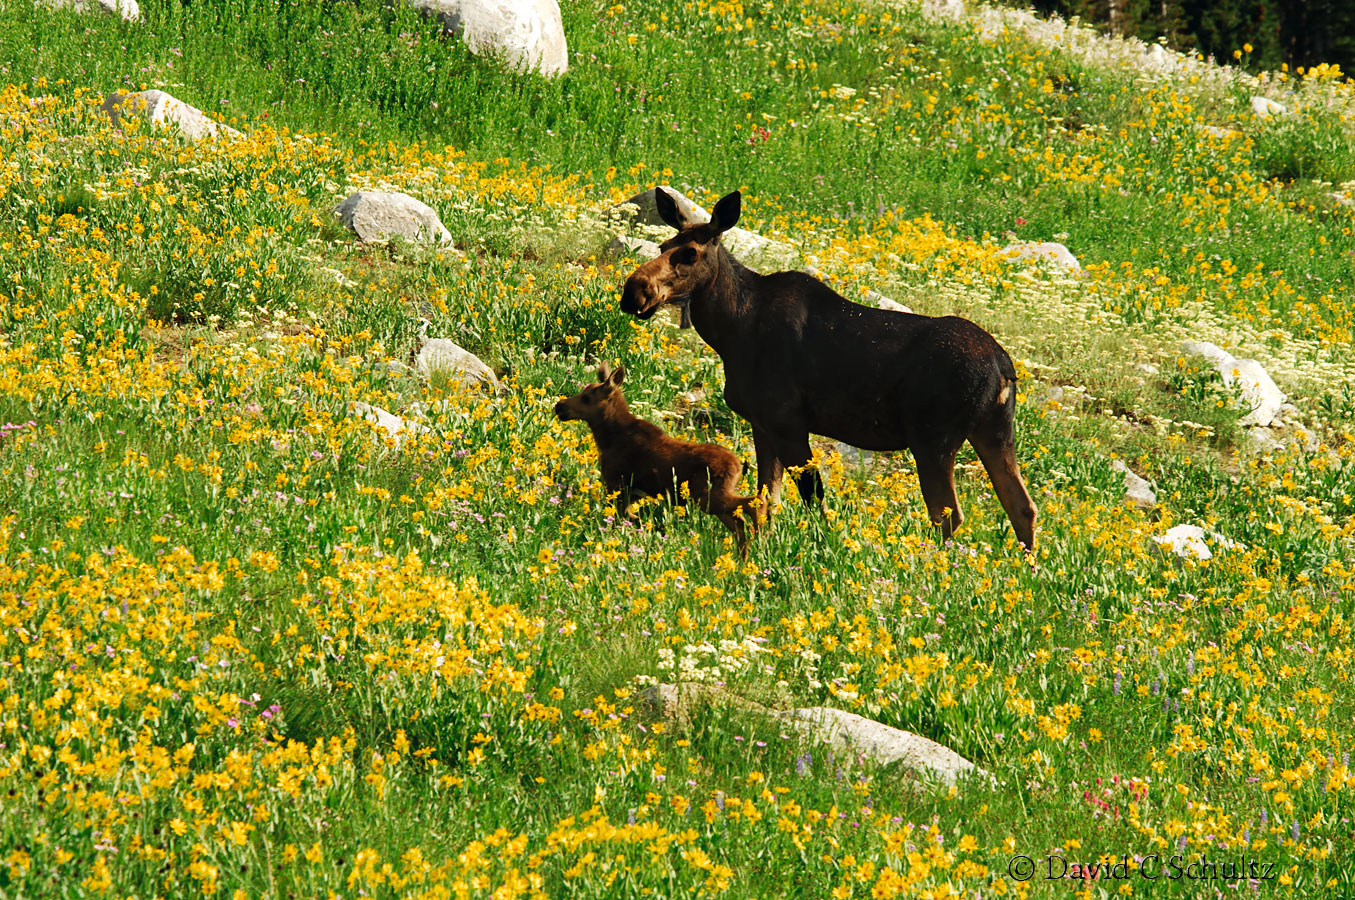 Moose in wildflowers, Alta, Utah - Image #161-182